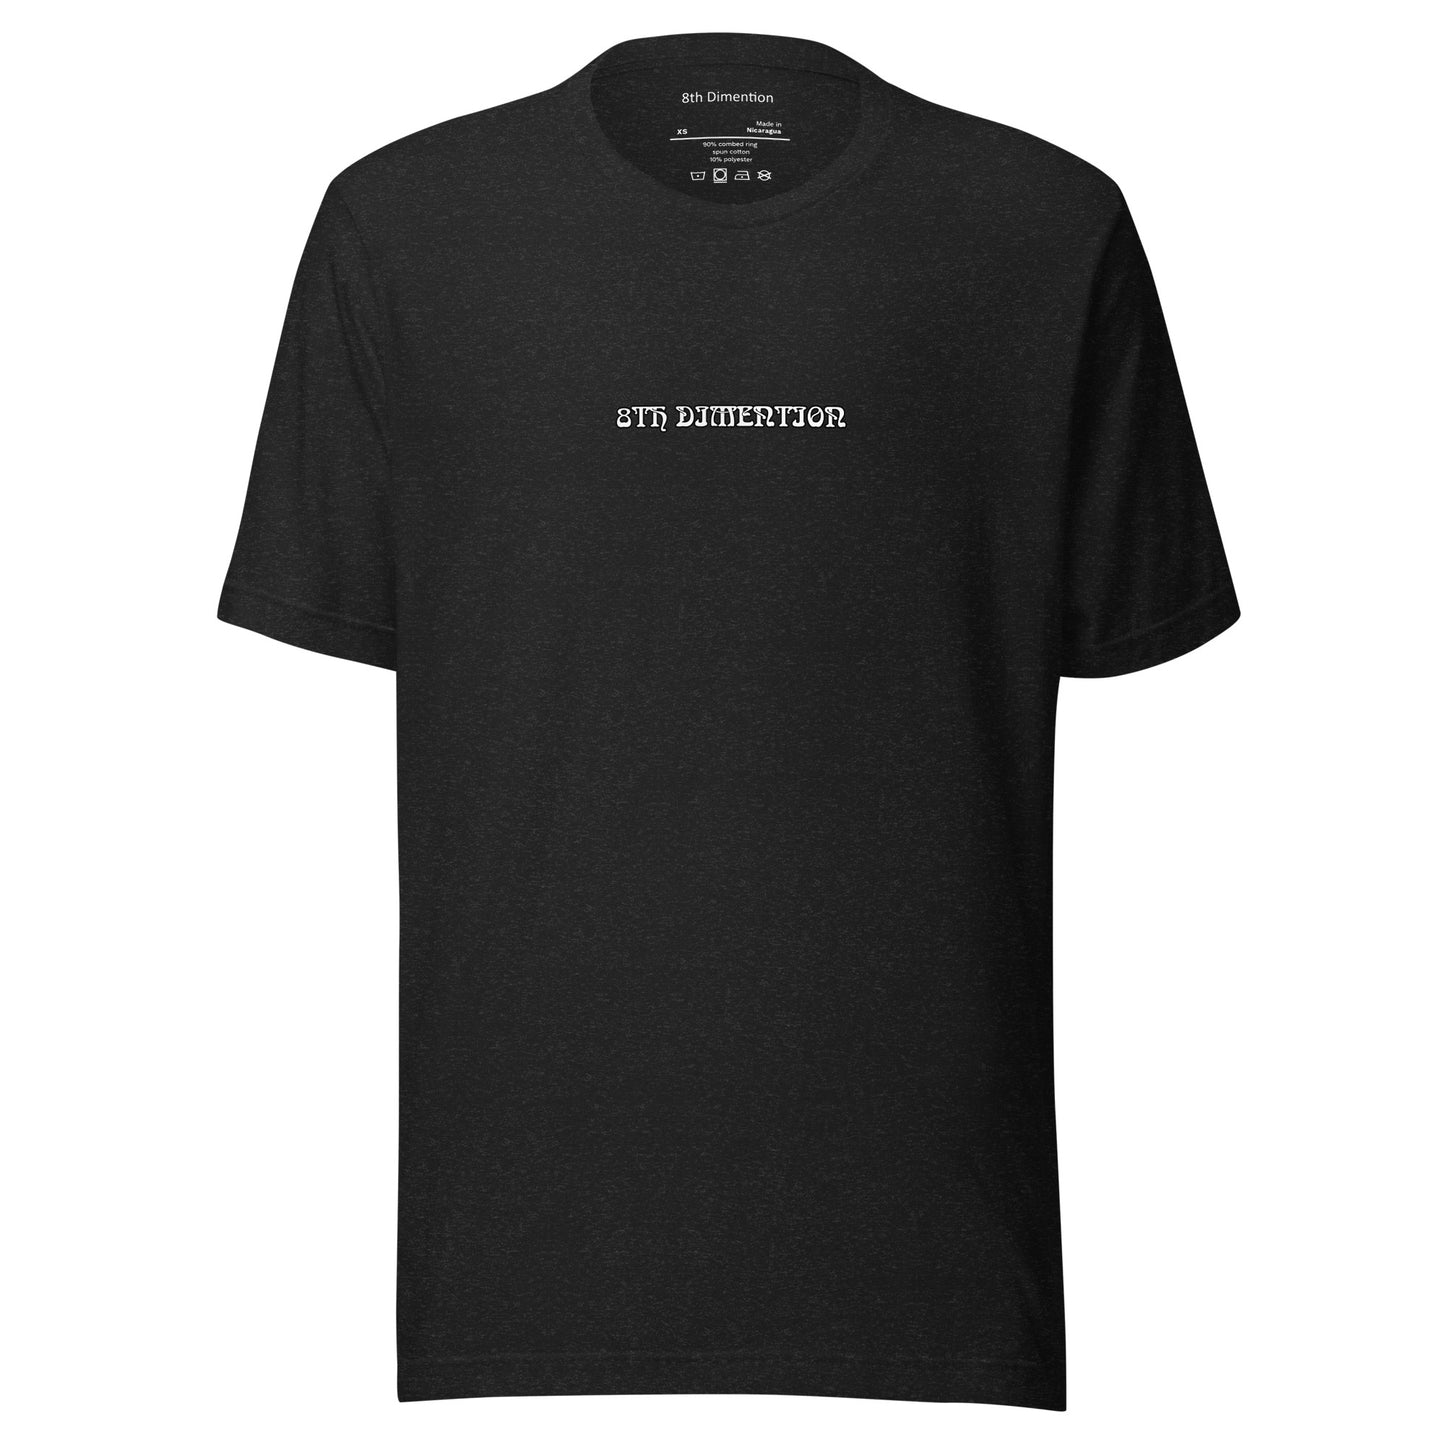 8th Dimention Unisex t-shirt